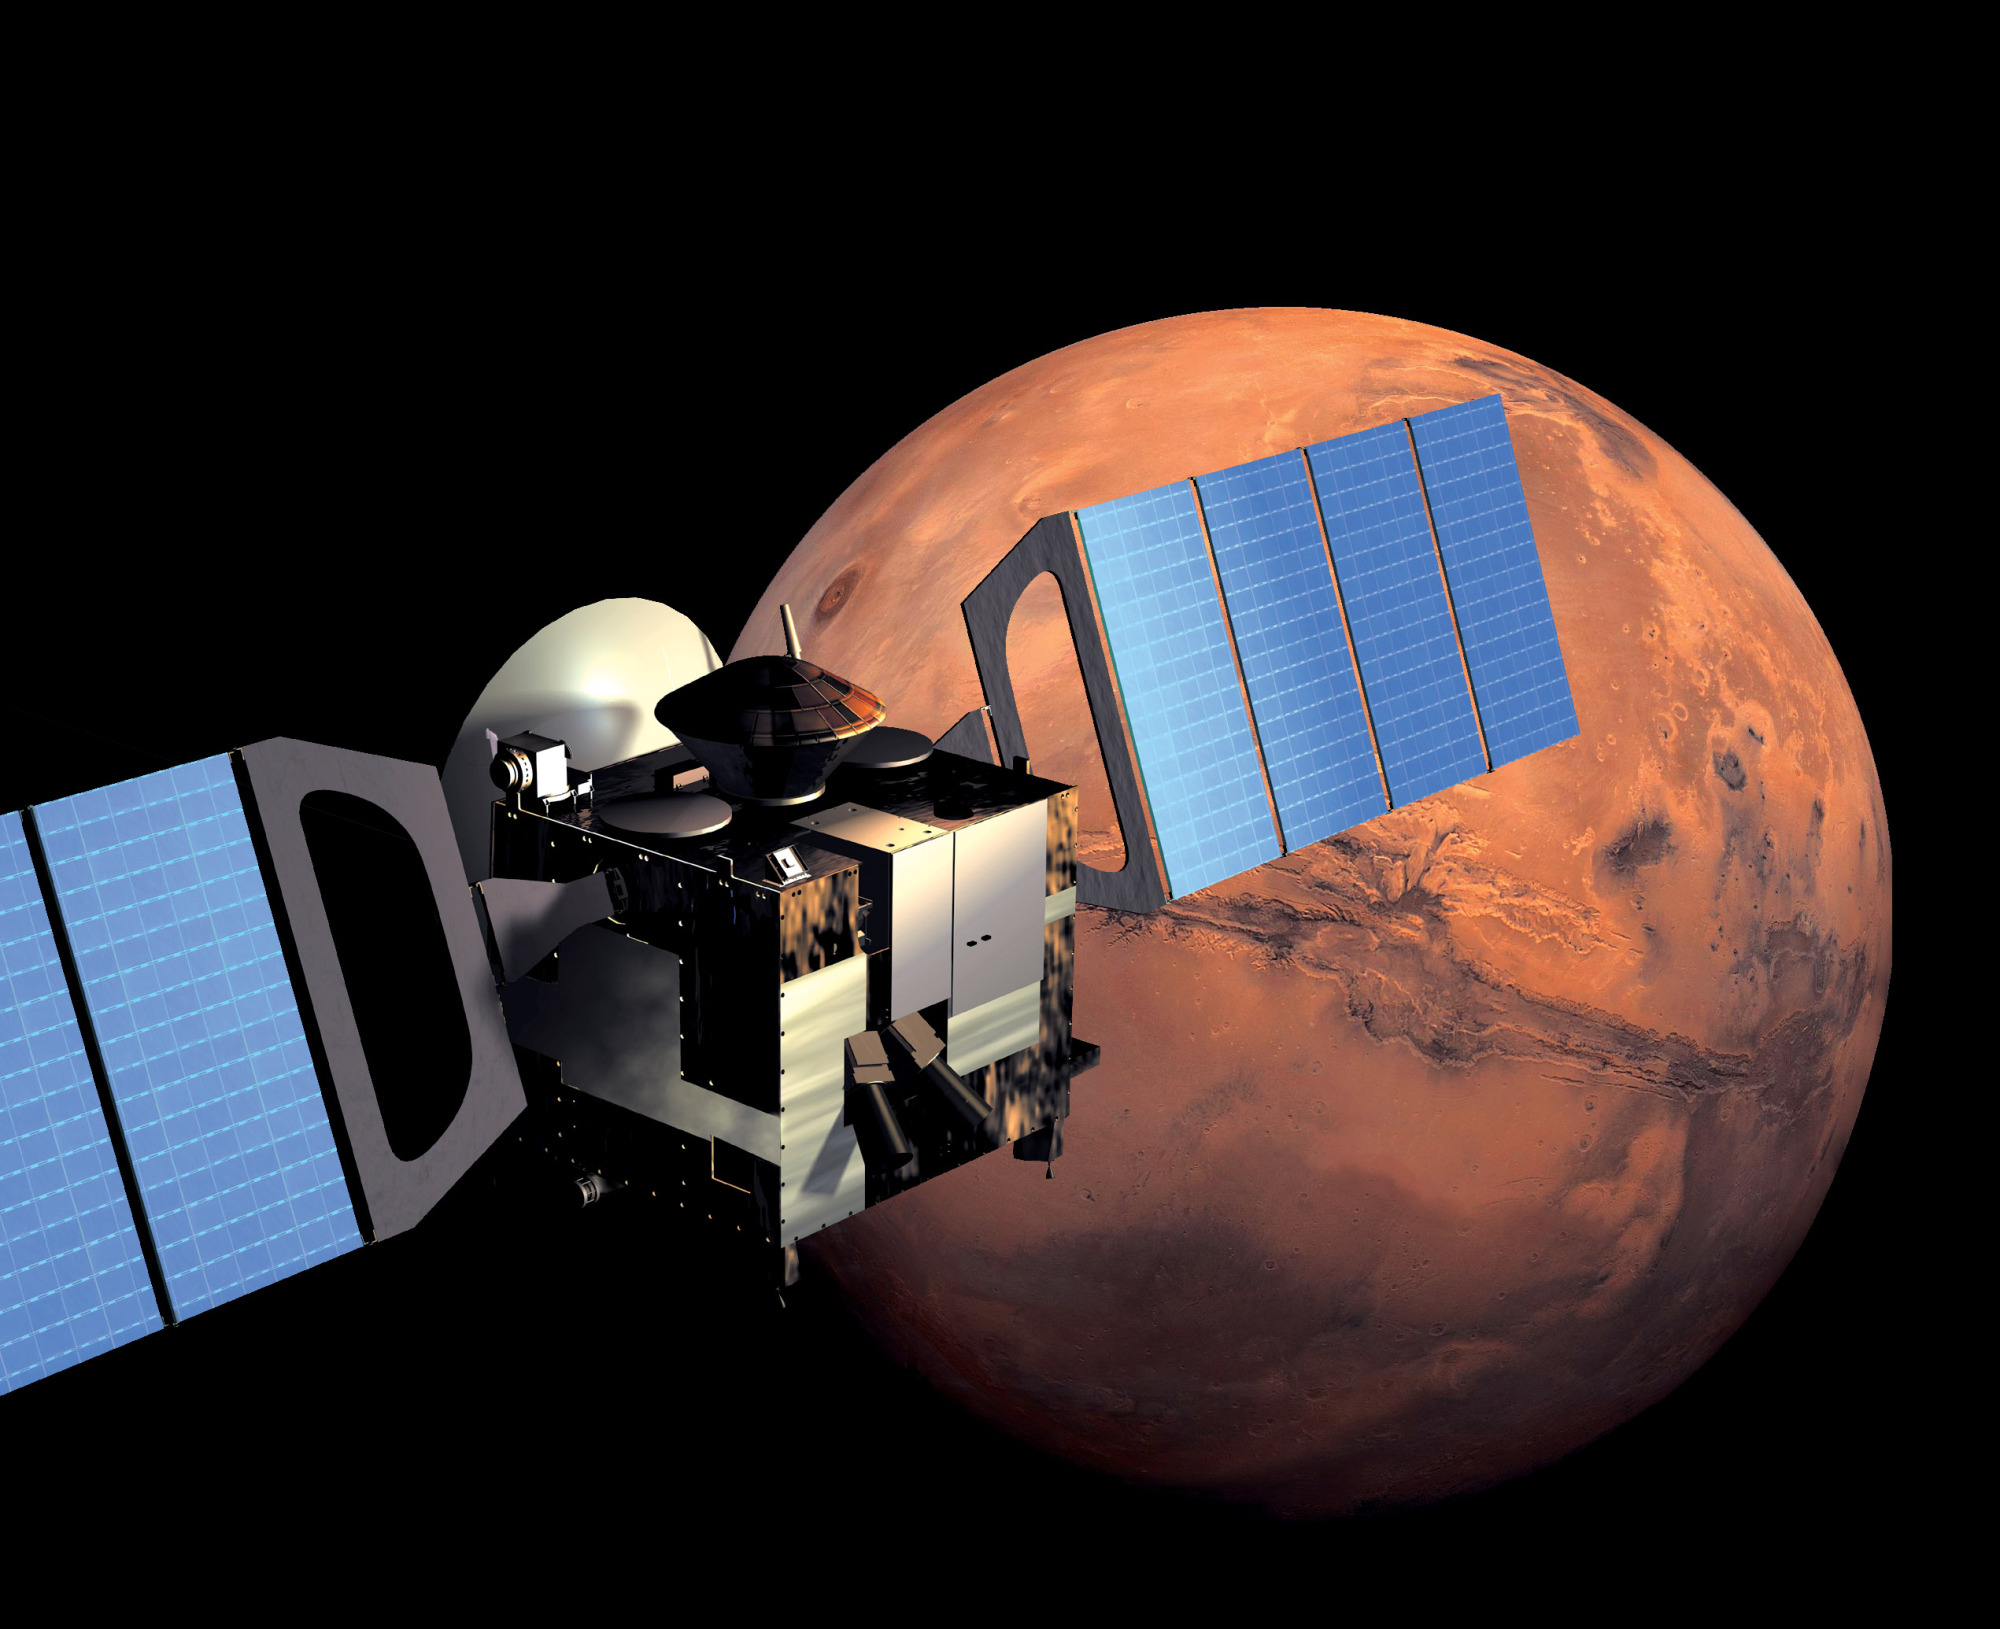 Vaisseau spatial Mars Express en orbite autour de Mars